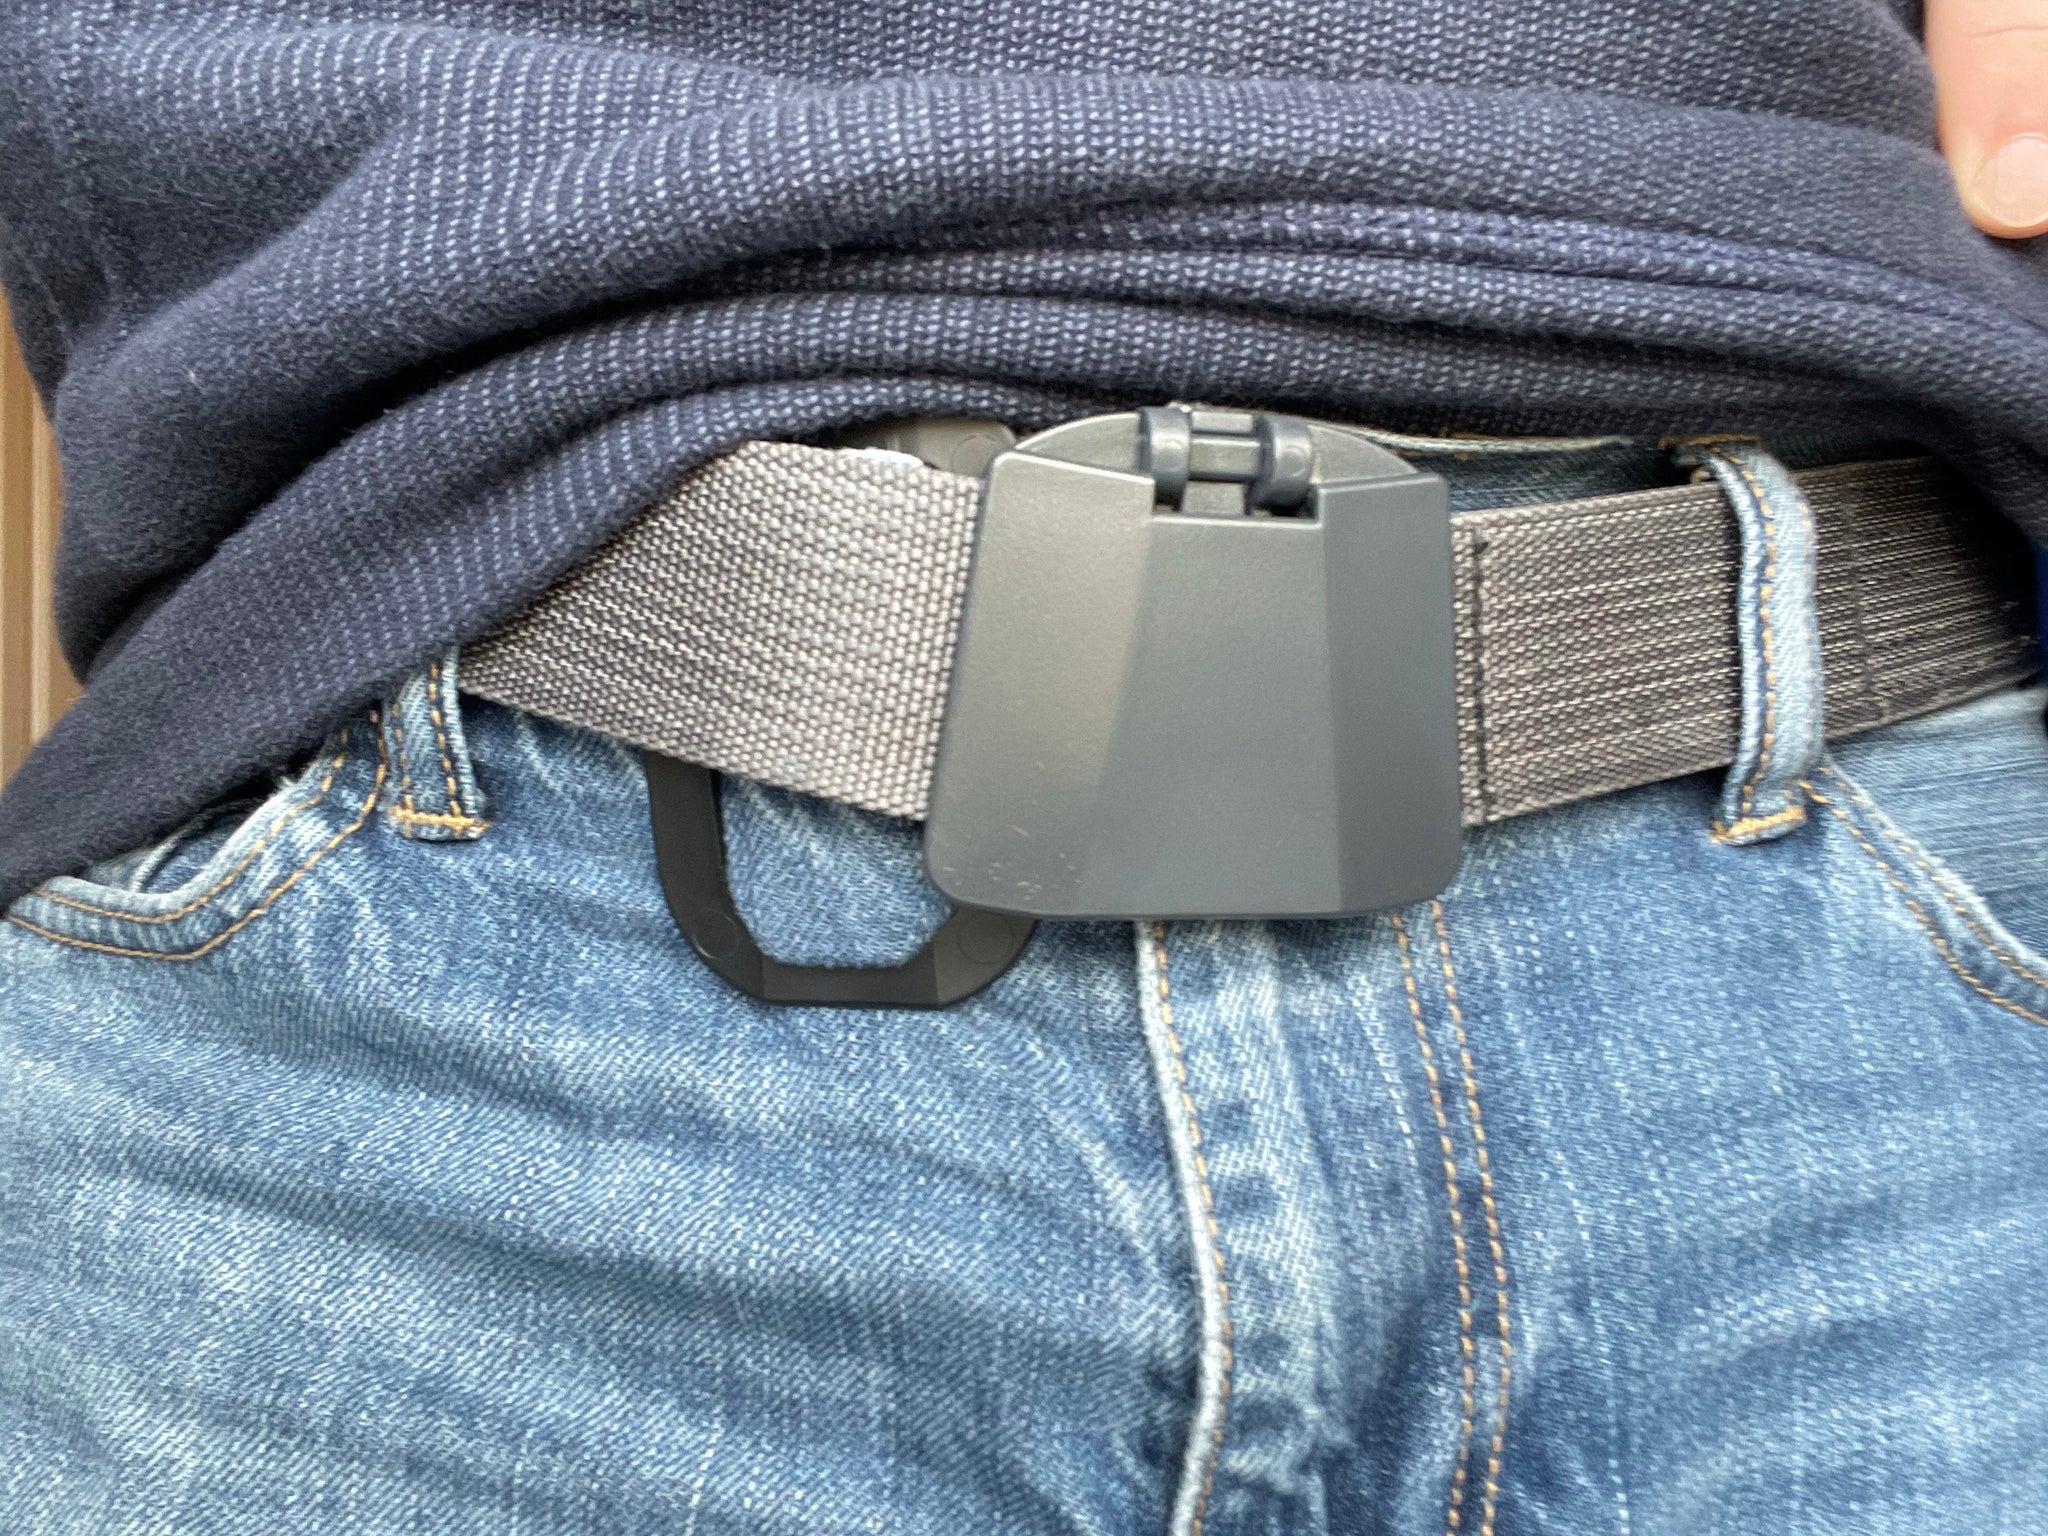 The A-Frame™ Belt- Shaped Like You